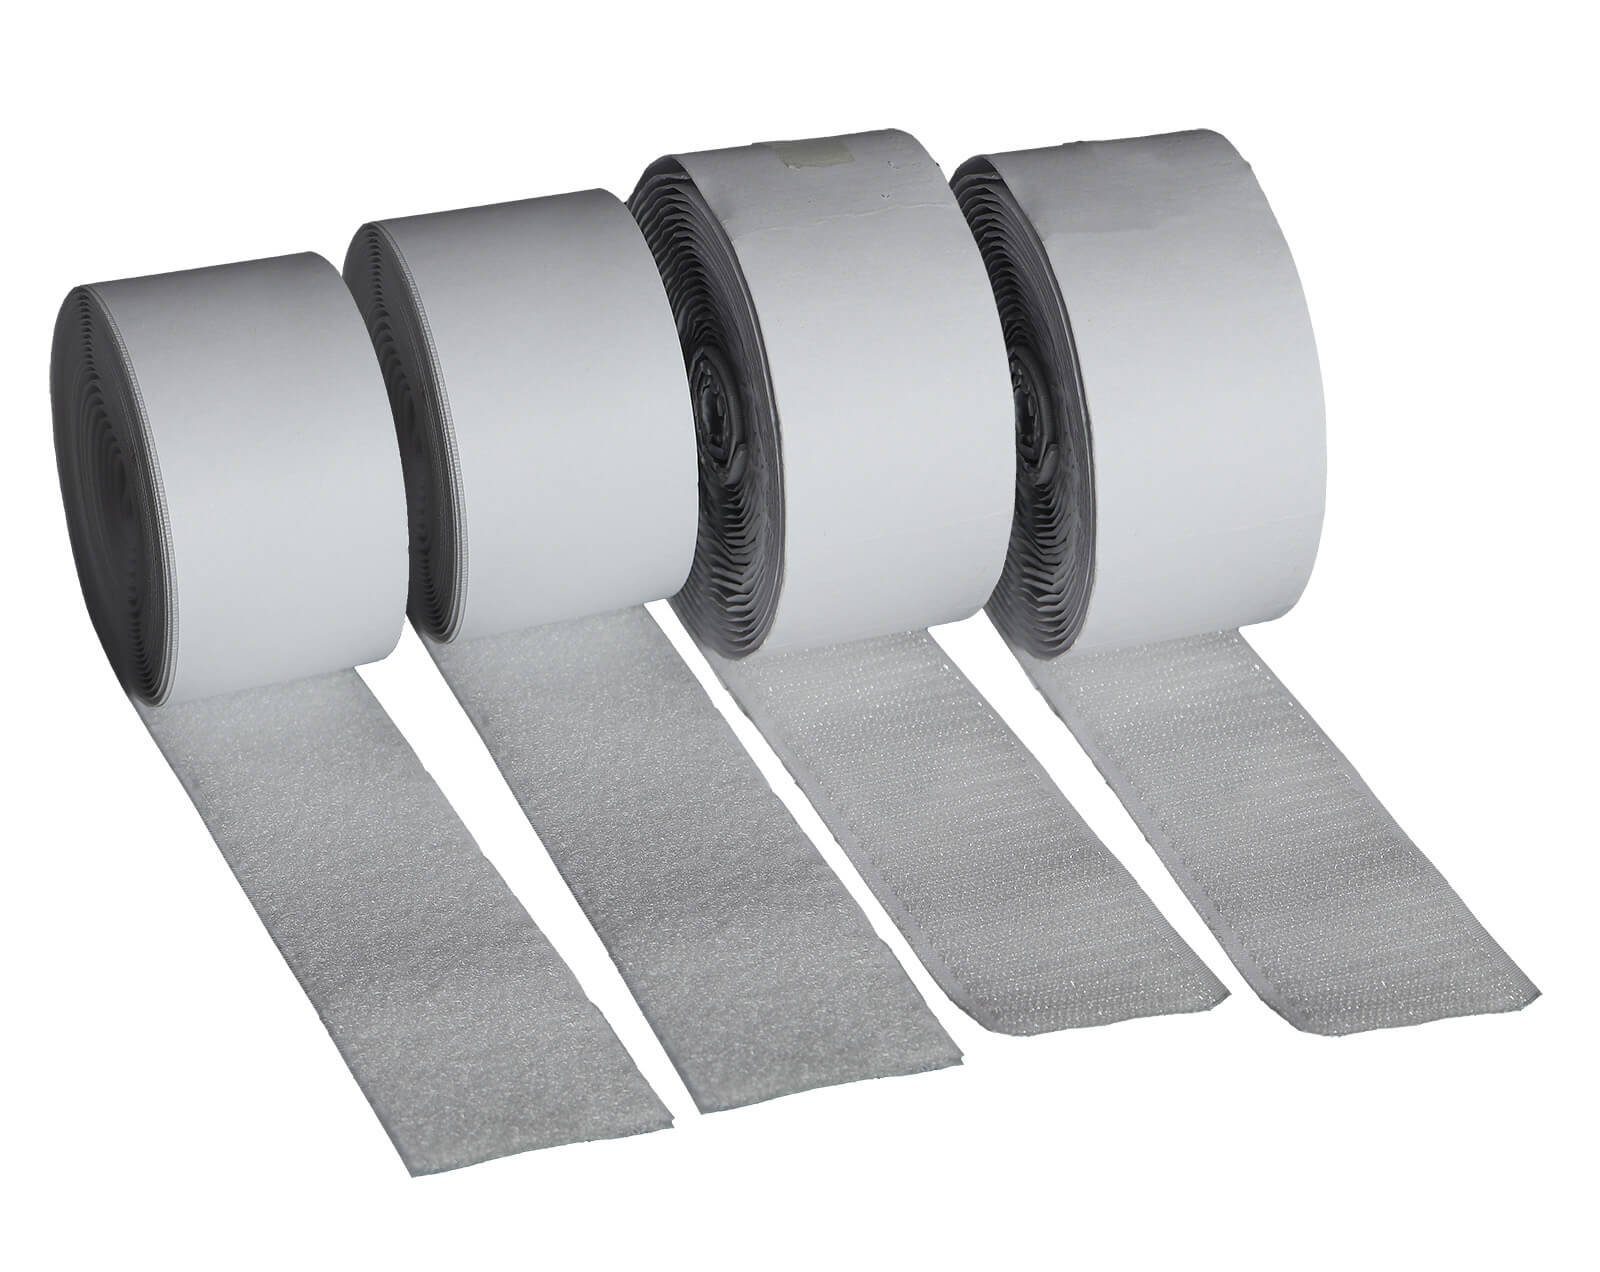 FIXMAN Klett-Klebeband Klettband weiß selbstklebend 4 Rollen Haken